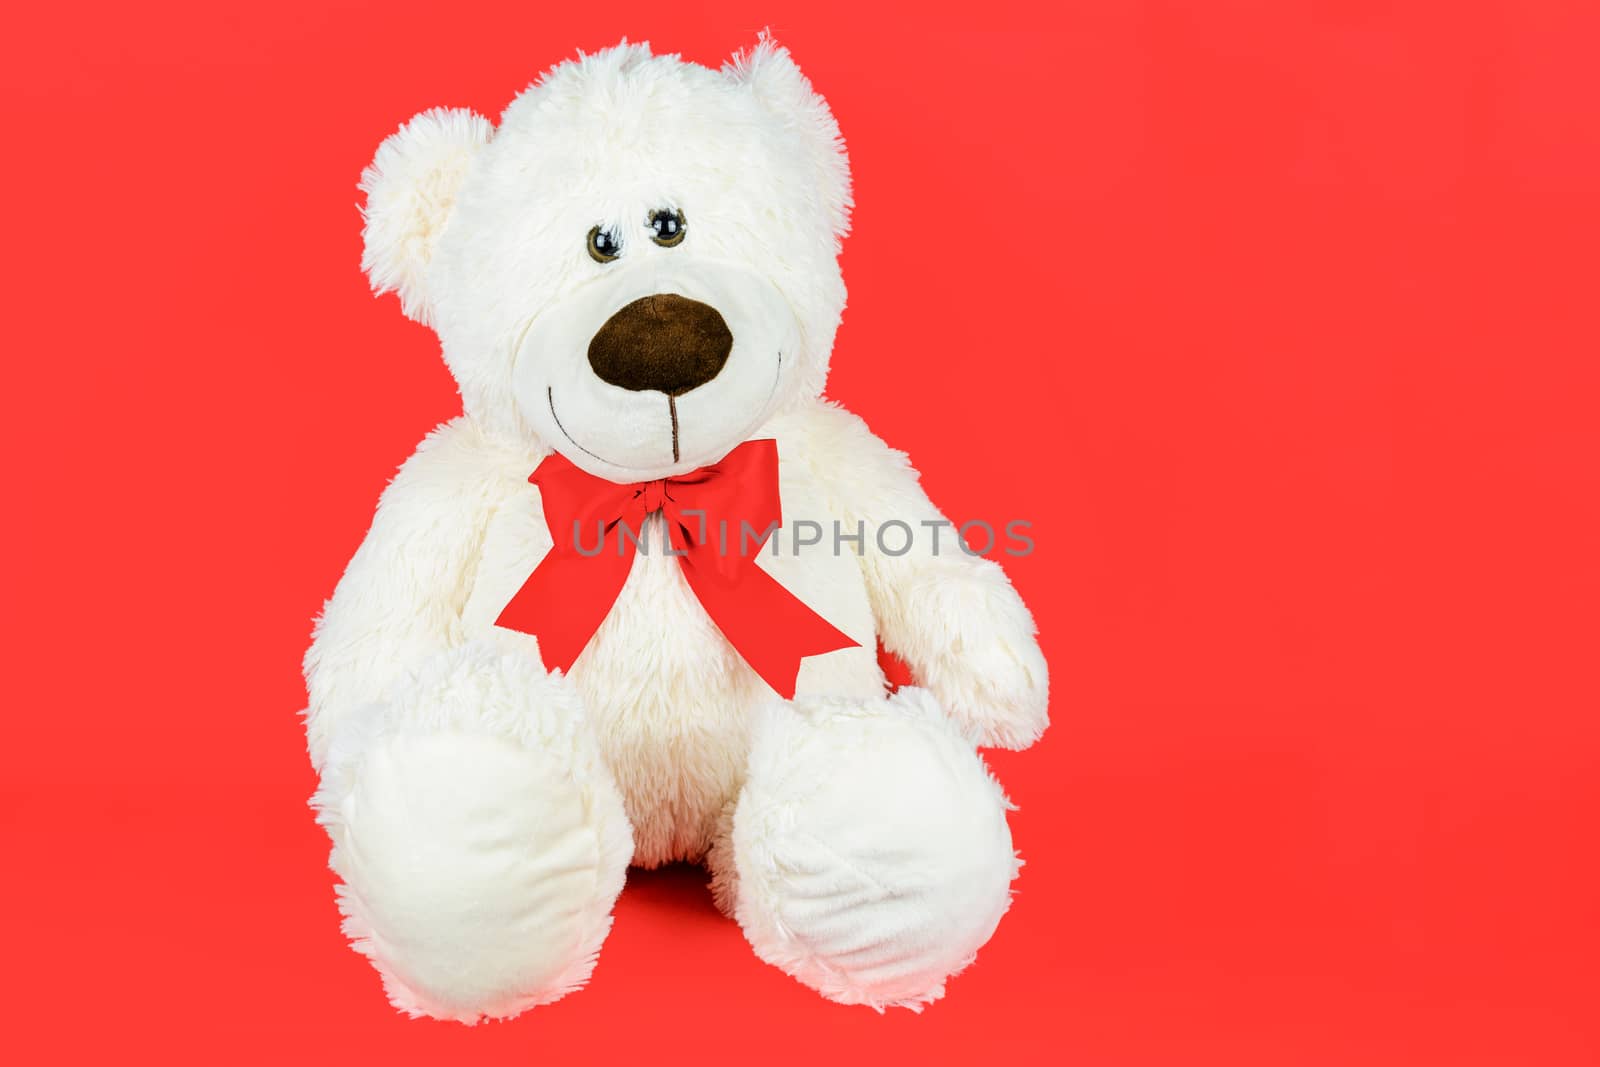 Cute white teddy bear by wdnet_studio